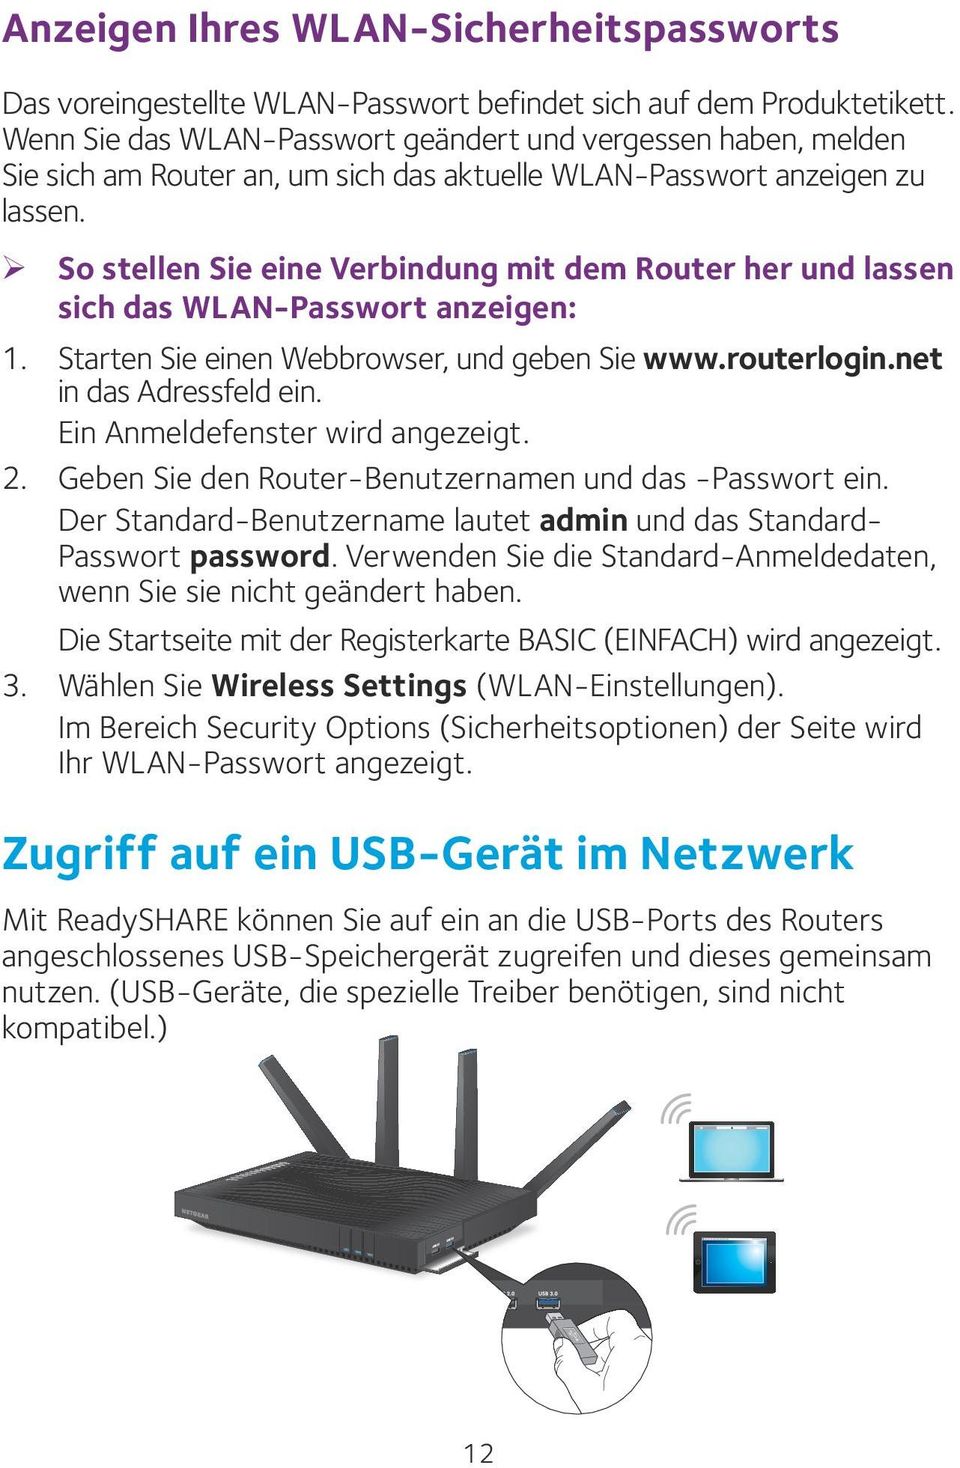 ¾ So stellen Sie eine Verbindung mit dem Router her und lassen sich das WLAN-Passwort anzeigen: 1. Starten Sie einen Webbrowser, und geben Sie www.routerlogin.net in das Adressfeld ein.